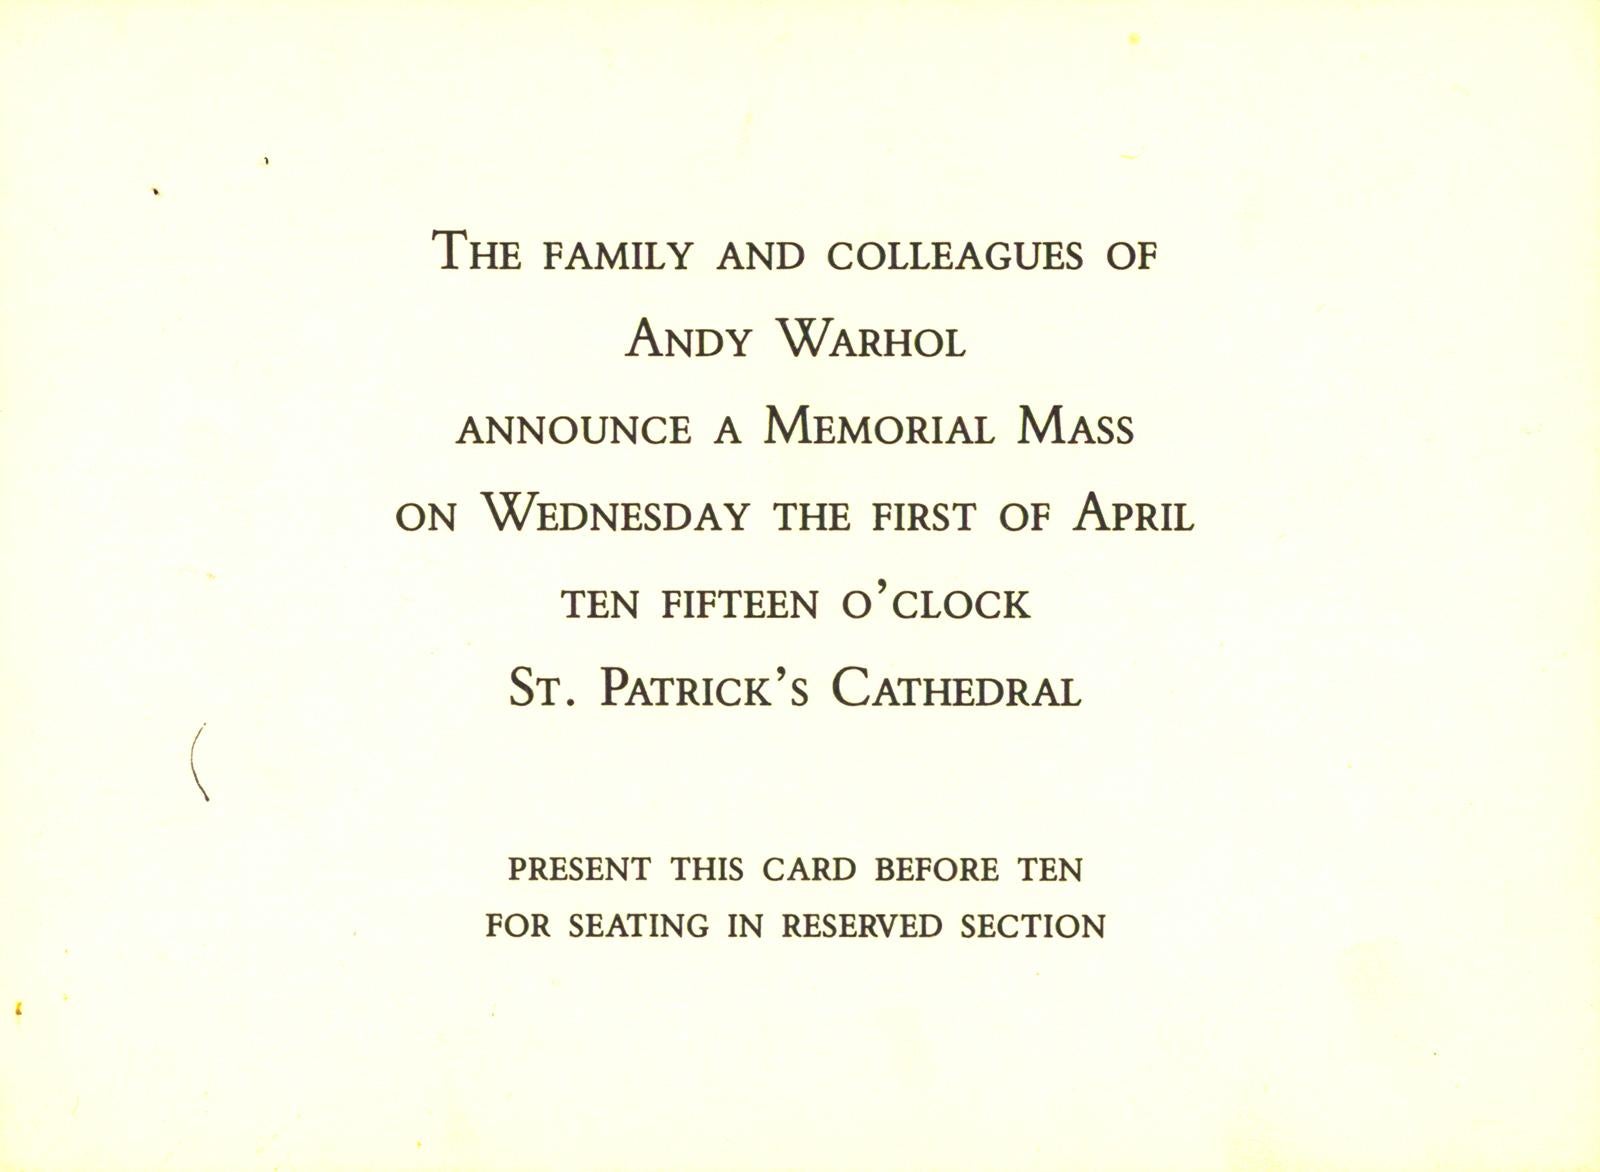 Andy Warhol Memorial Mass St. Patricks Cathedral, April 1, 1987, New York, NY (Andy Warhol death 1987) :
Un ensemble de 3 cartes rares et historiques annonçant la commémoration d'Andy Warhol à New York en 1987.

Support : faire-part imprimé.